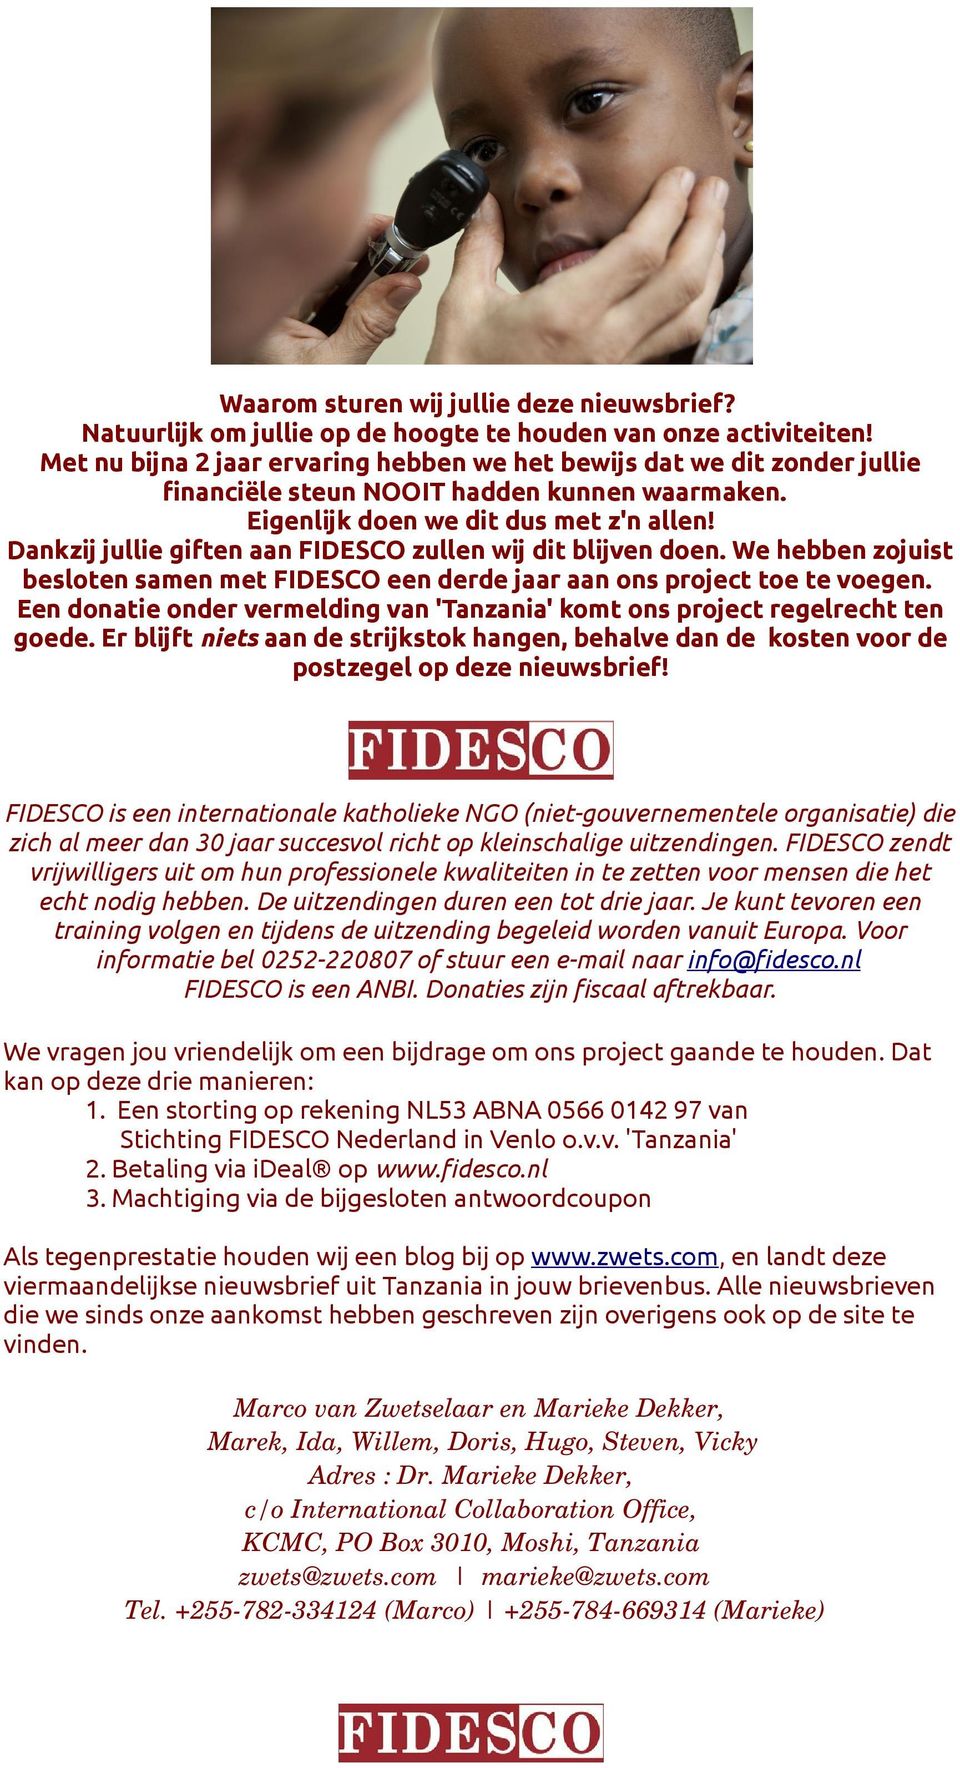 Dankzij jullie giften aan FIDESCO zullen wij dit blijven doen. We hebben zojuist besloten samen met FIDESCO een derde jaar aan ons project toe te voegen.